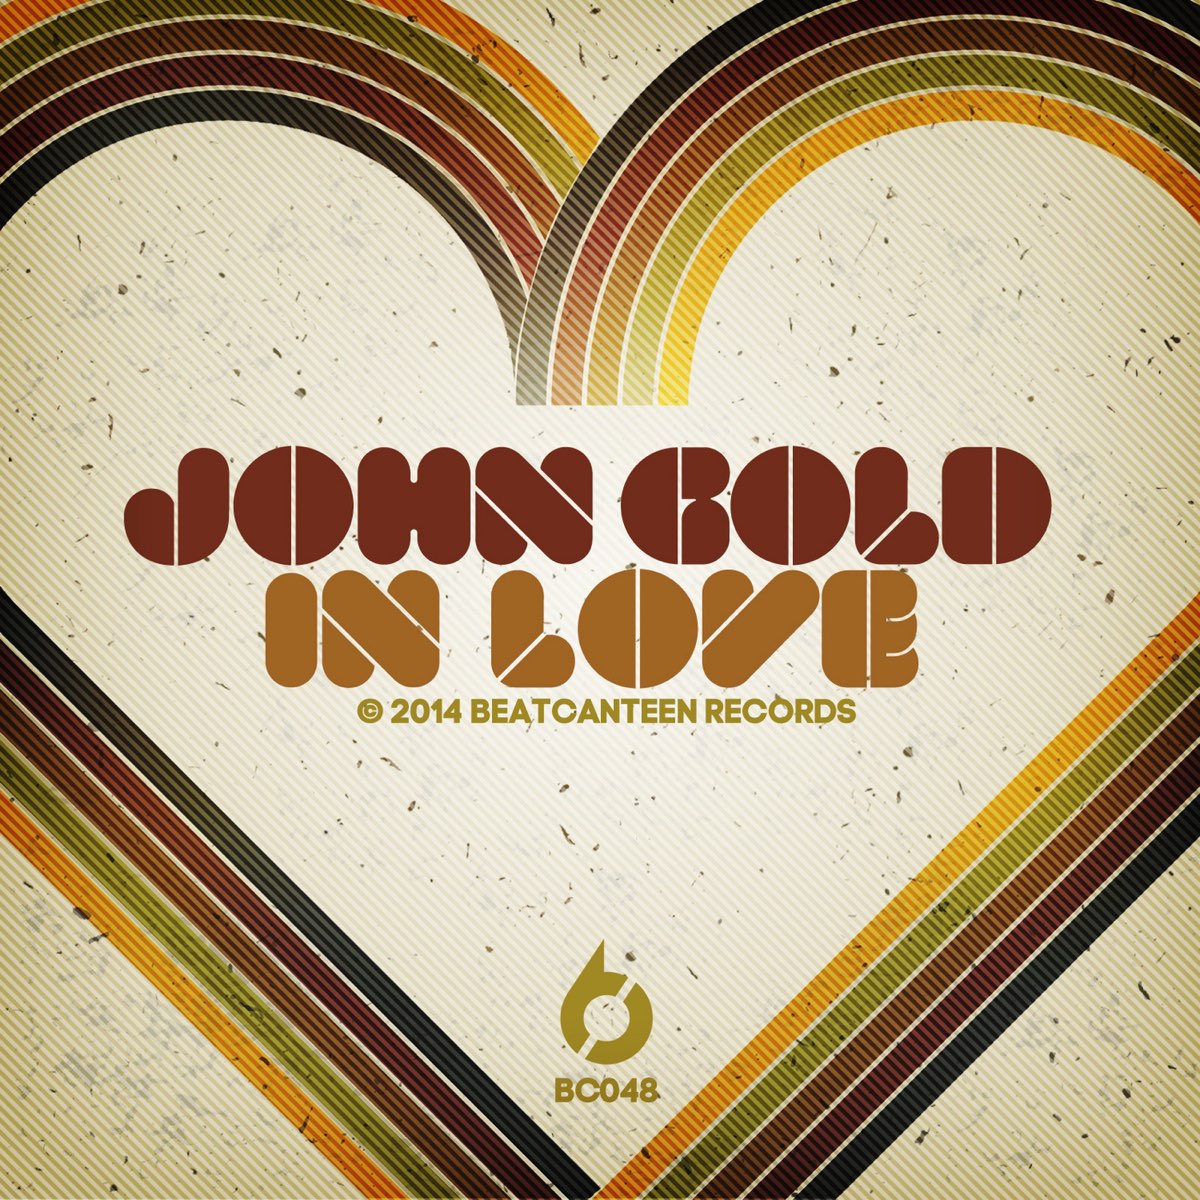 Lovely John. John Love kaglami. Lover over Gold album. The kind of Love - Single. Джон лов